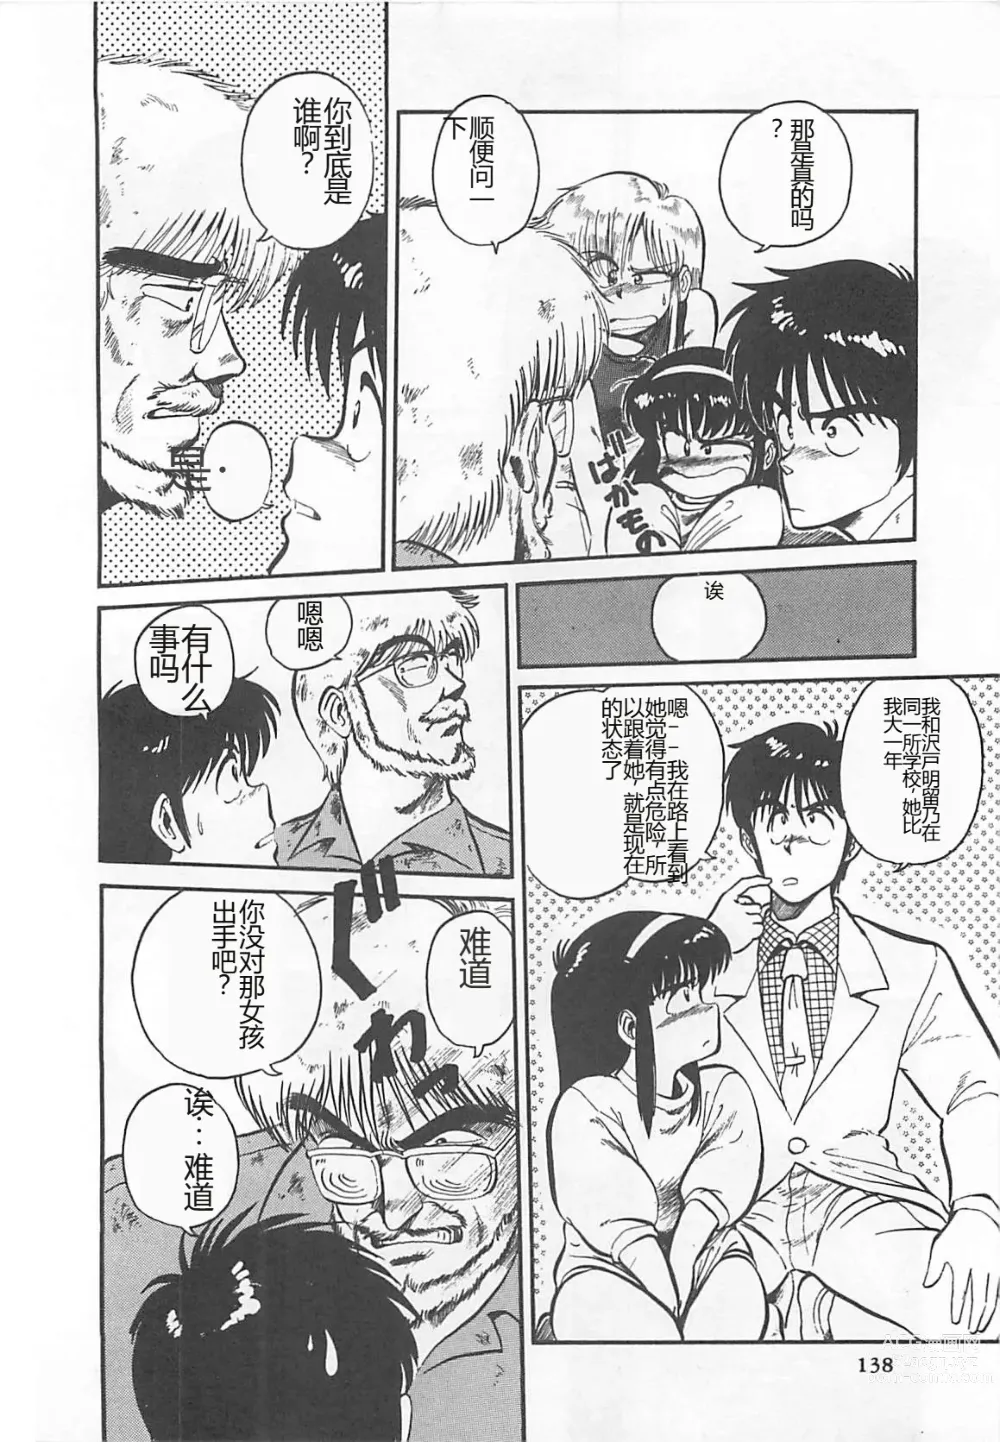 Page 141 of manga Tamonzen Zigoku Rounin